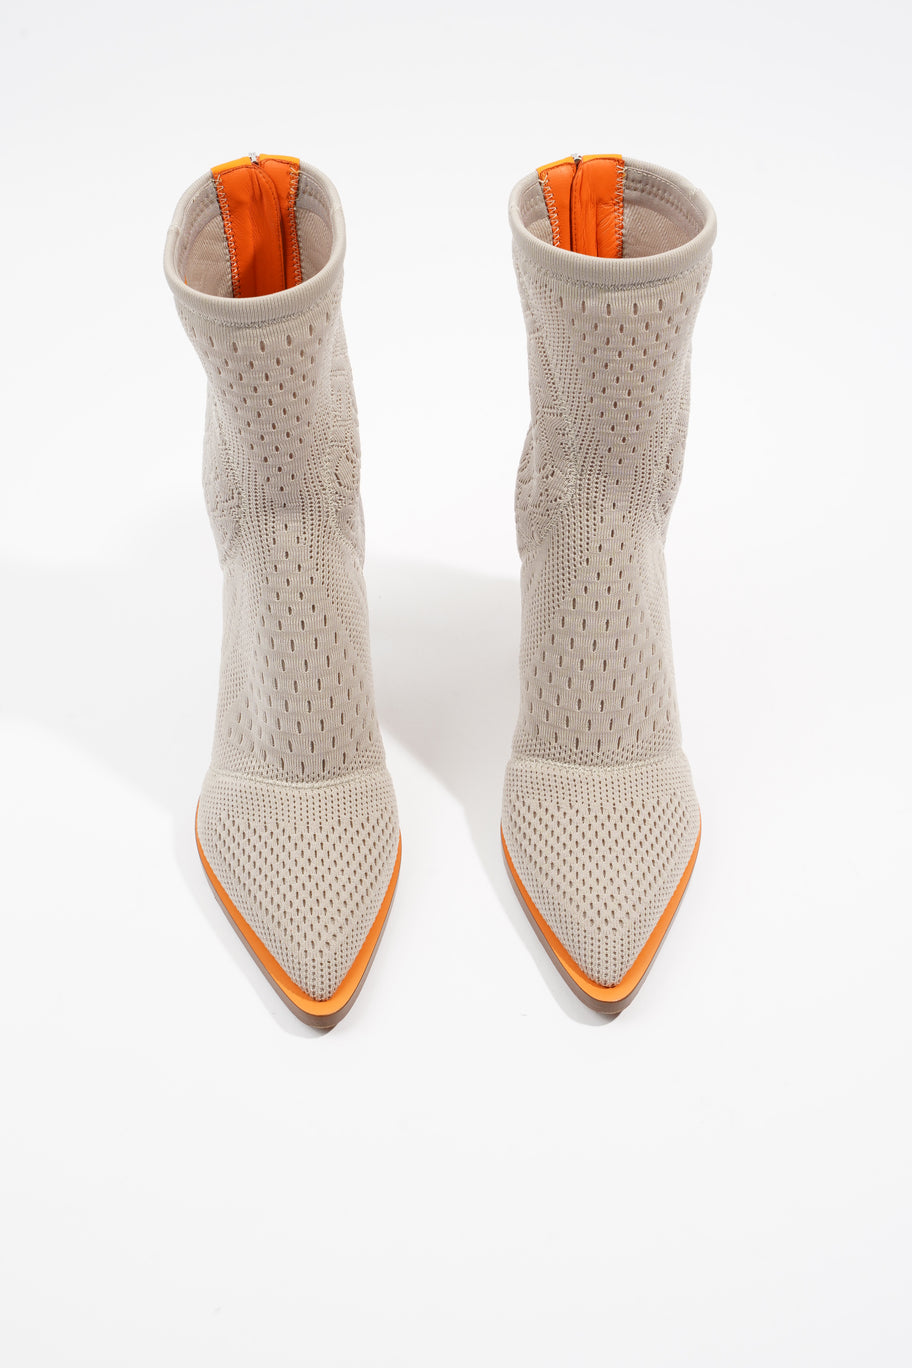 FFrame Jacquard Boots 90 Grey / Orange Fabric EU 39 UK 6 Image 8